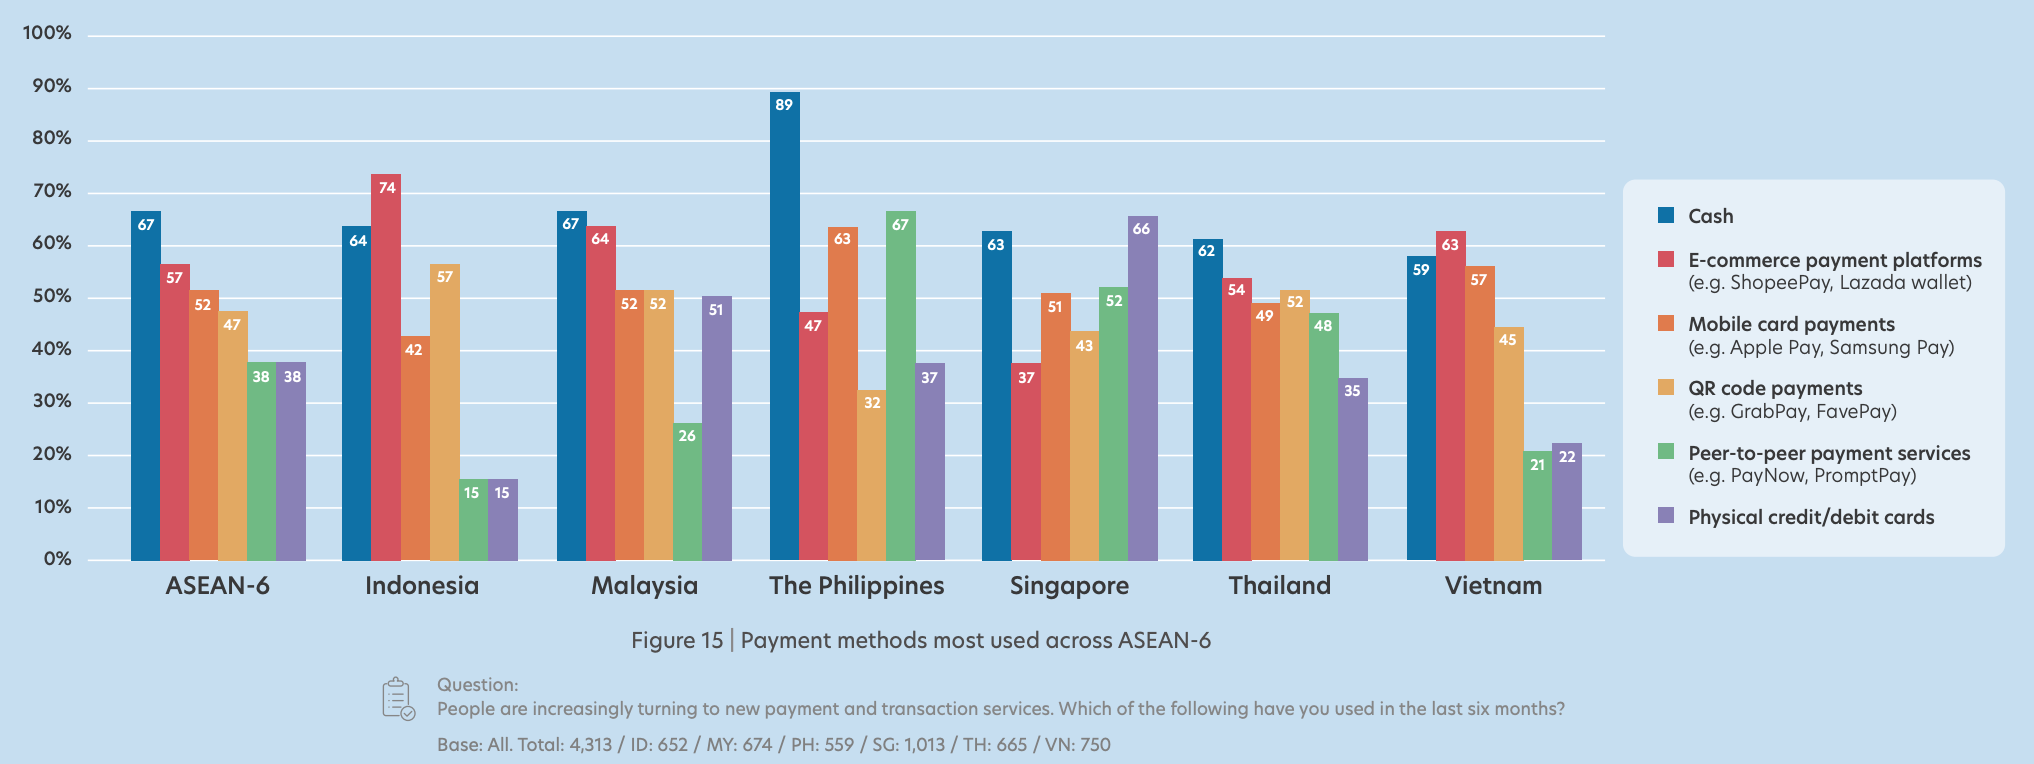 שיטות התשלום הנפוצות ביותר ברחבי ASEAN-6, מקור: Fintech ב-ASEAN 2022: Finance, reimagined, UOB, נובמבר 2022